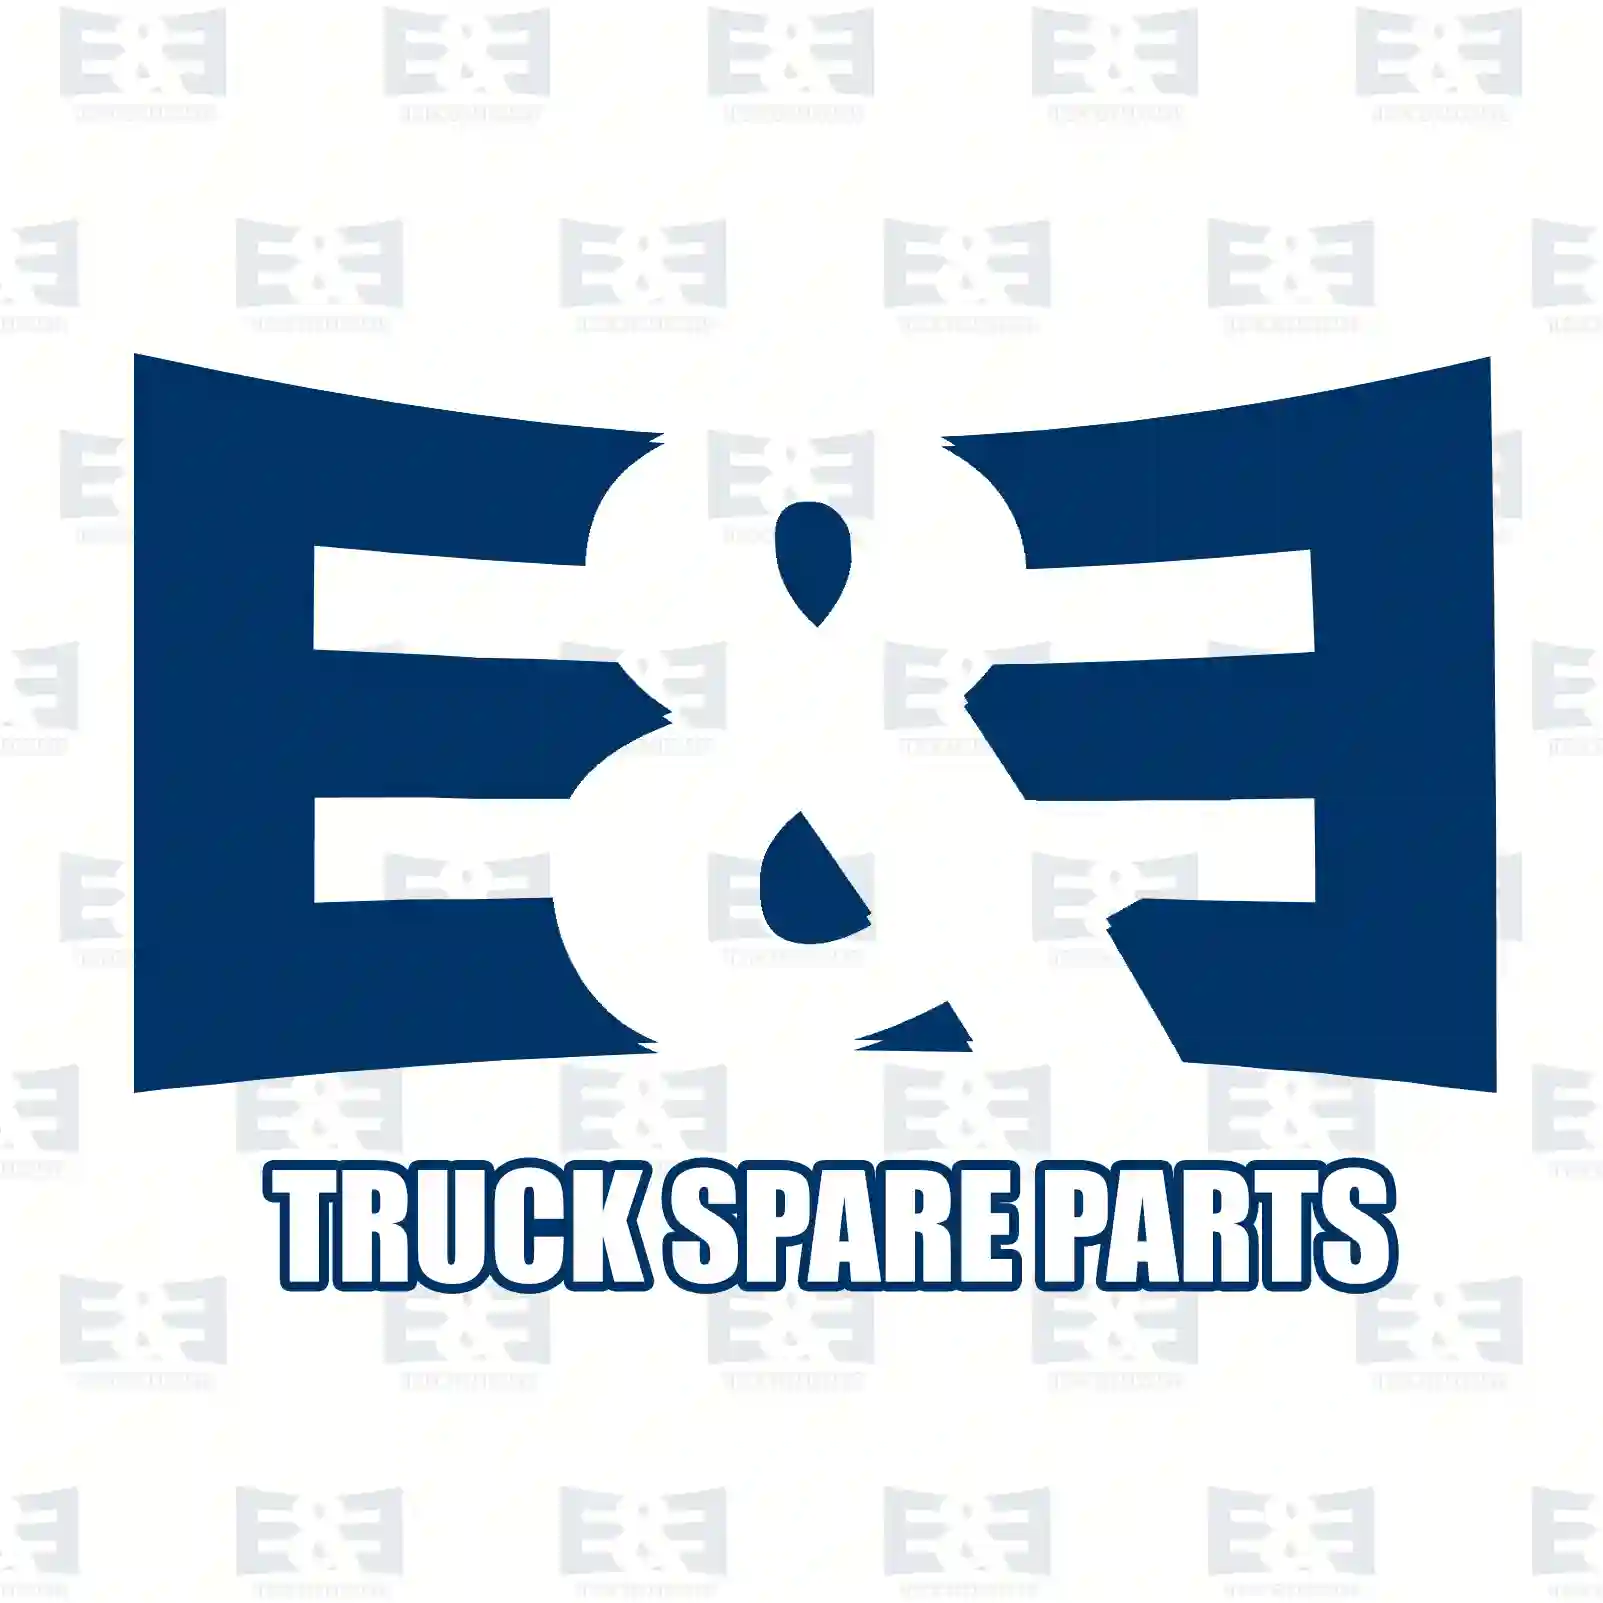 Oil filter insert, 2E2207954, 1088179, 1105691, 1349745, 5C1Q-6744-AA, XS7Q-6744-AA, JDE2464 ||  2E2207954 E&E Truck Spare Parts | Truck Spare Parts, Auotomotive Spare Parts Oil filter insert, 2E2207954, 1088179, 1105691, 1349745, 5C1Q-6744-AA, XS7Q-6744-AA, JDE2464 ||  2E2207954 E&E Truck Spare Parts | Truck Spare Parts, Auotomotive Spare Parts